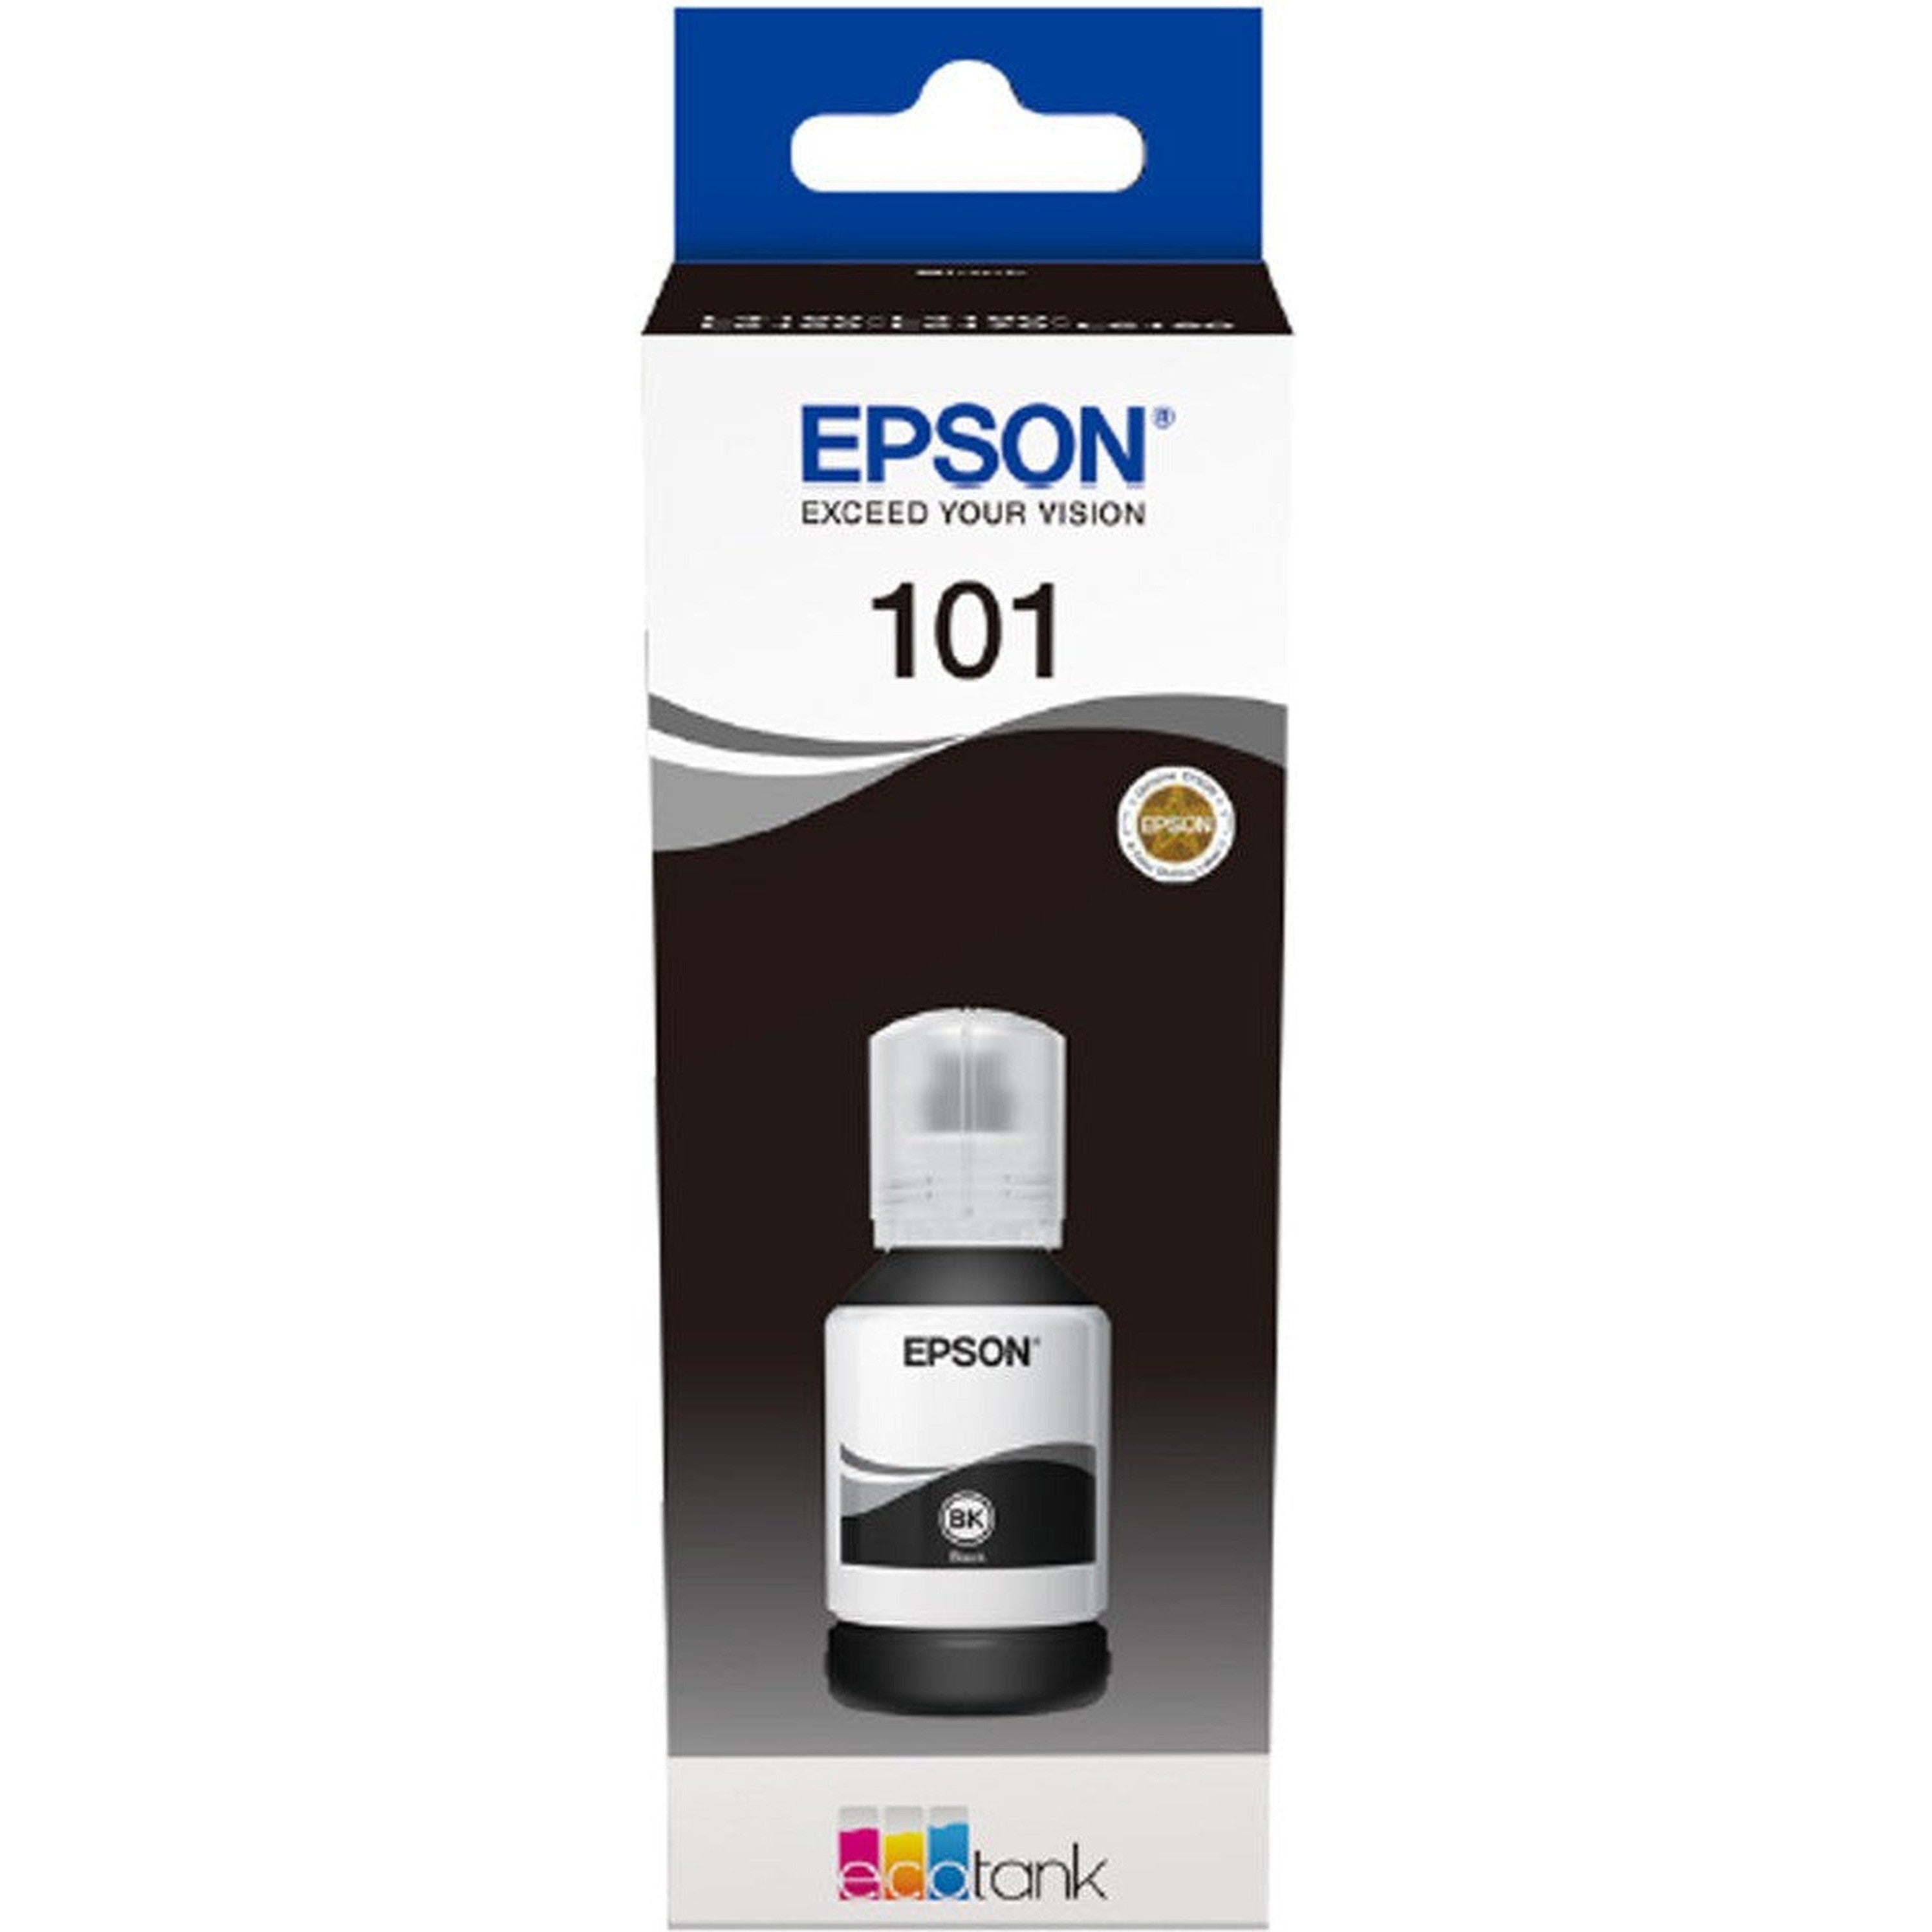 Epson 101 Black Ink Cartridge-Inks And Toners-Epson-Star Light Kuwait